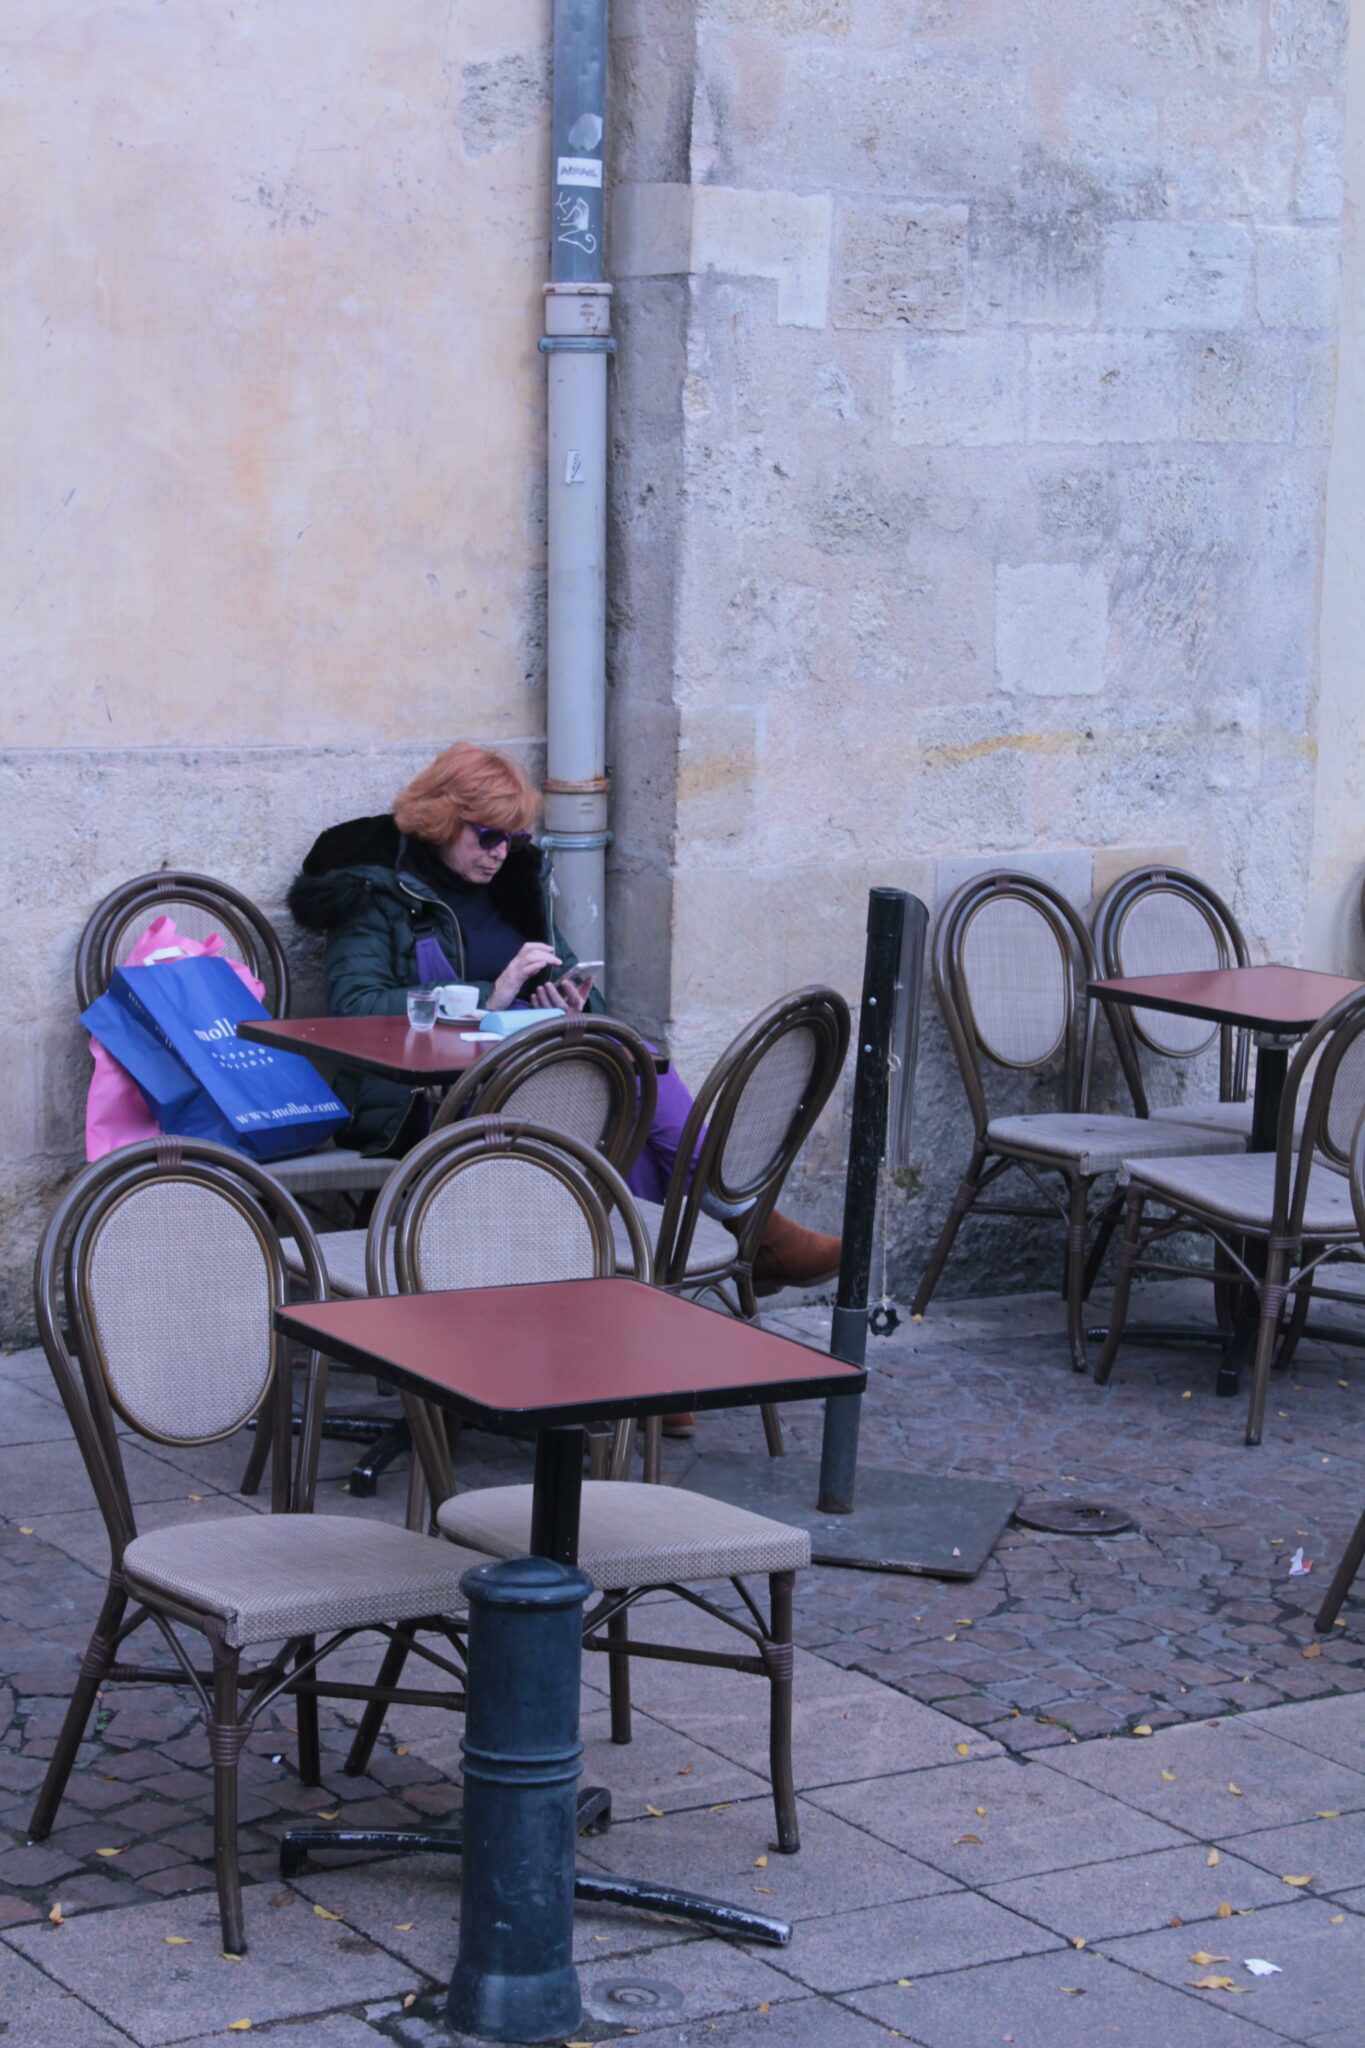 Place Camille Julian, la solitude se ressent. Ordinairement peuplée avec ses nombreux restaurants, seule une promeneuse s’est arrêtée, à la recherche d’une boisson chaude pour profiter d’une pause devant son écran de téléphone.